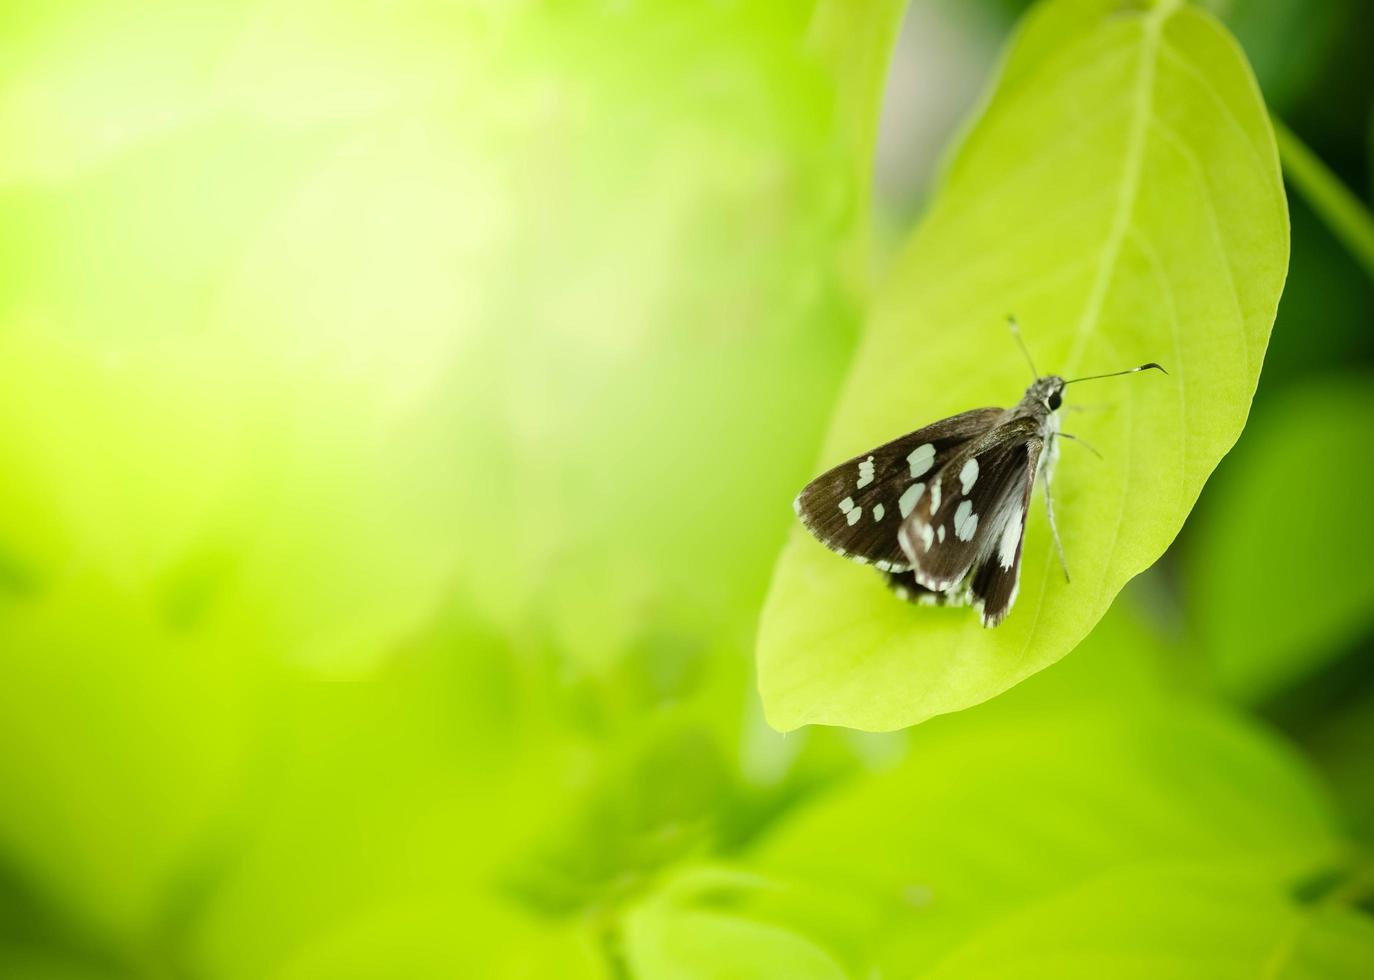 Nahaufnahme der Natur des Schmetterlings des grünen Blattes auf unscharfem grünem Hintergrund im Garten. Natürliche grüne Blätter Pflanzen, die als Frühlingsdeckblatt Grün Umwelt Ökologie Lindgrüne Tapete verwendet werden foto